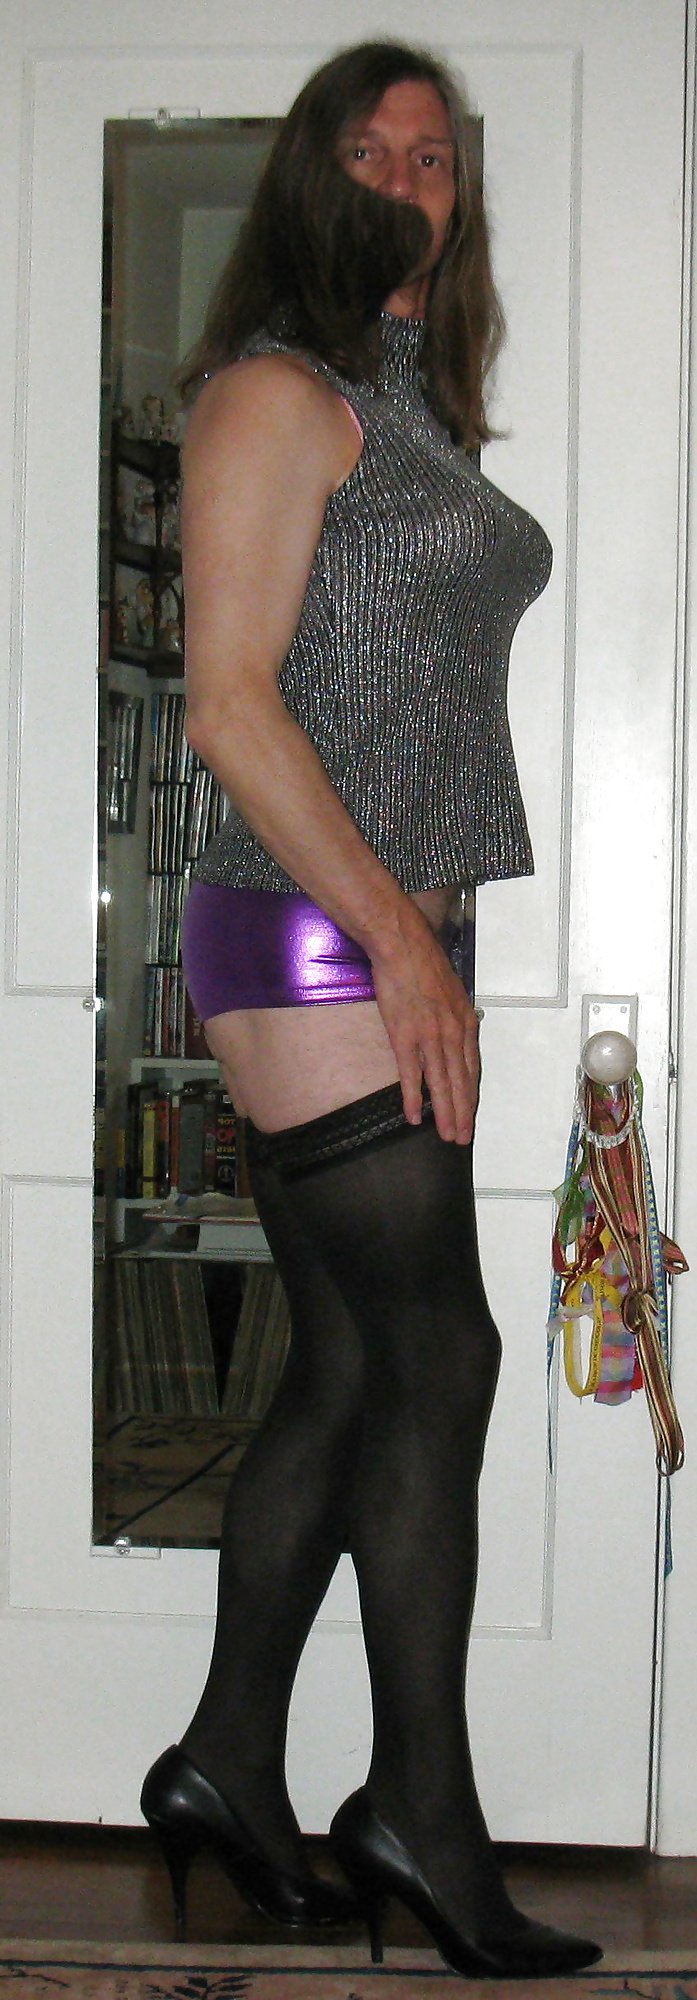 女装 - 黒のブーティショーツと紫のスパンキーパンツ
 #31337072